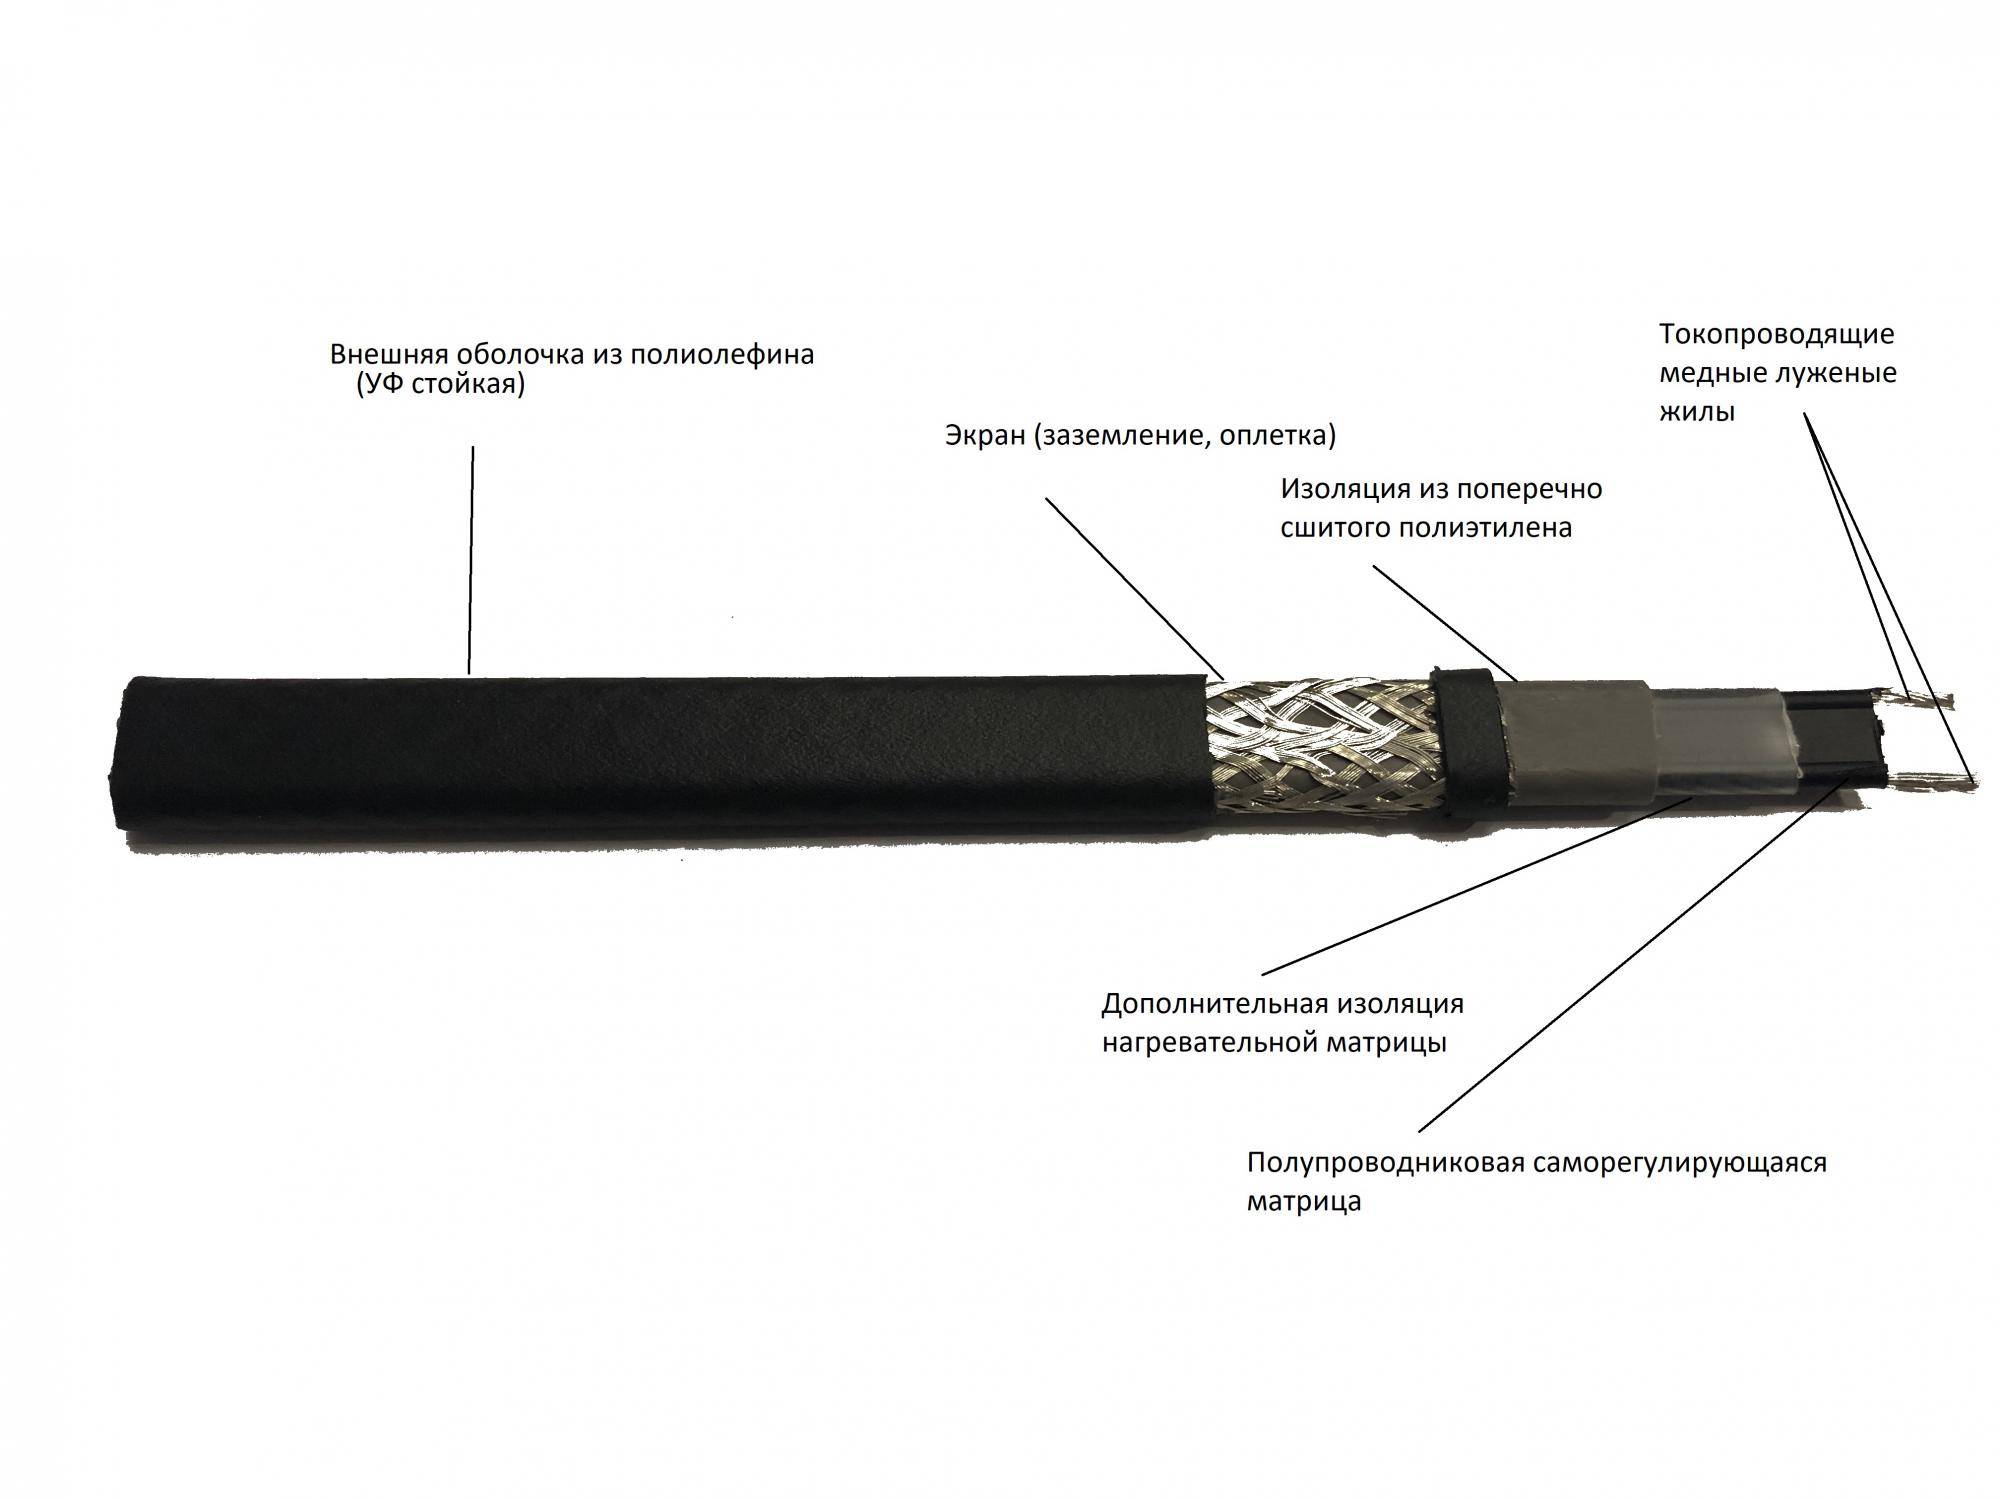 Саморегулирующийся греющий кабель подключение: принцип работы нагревательного кабеля для водопровода